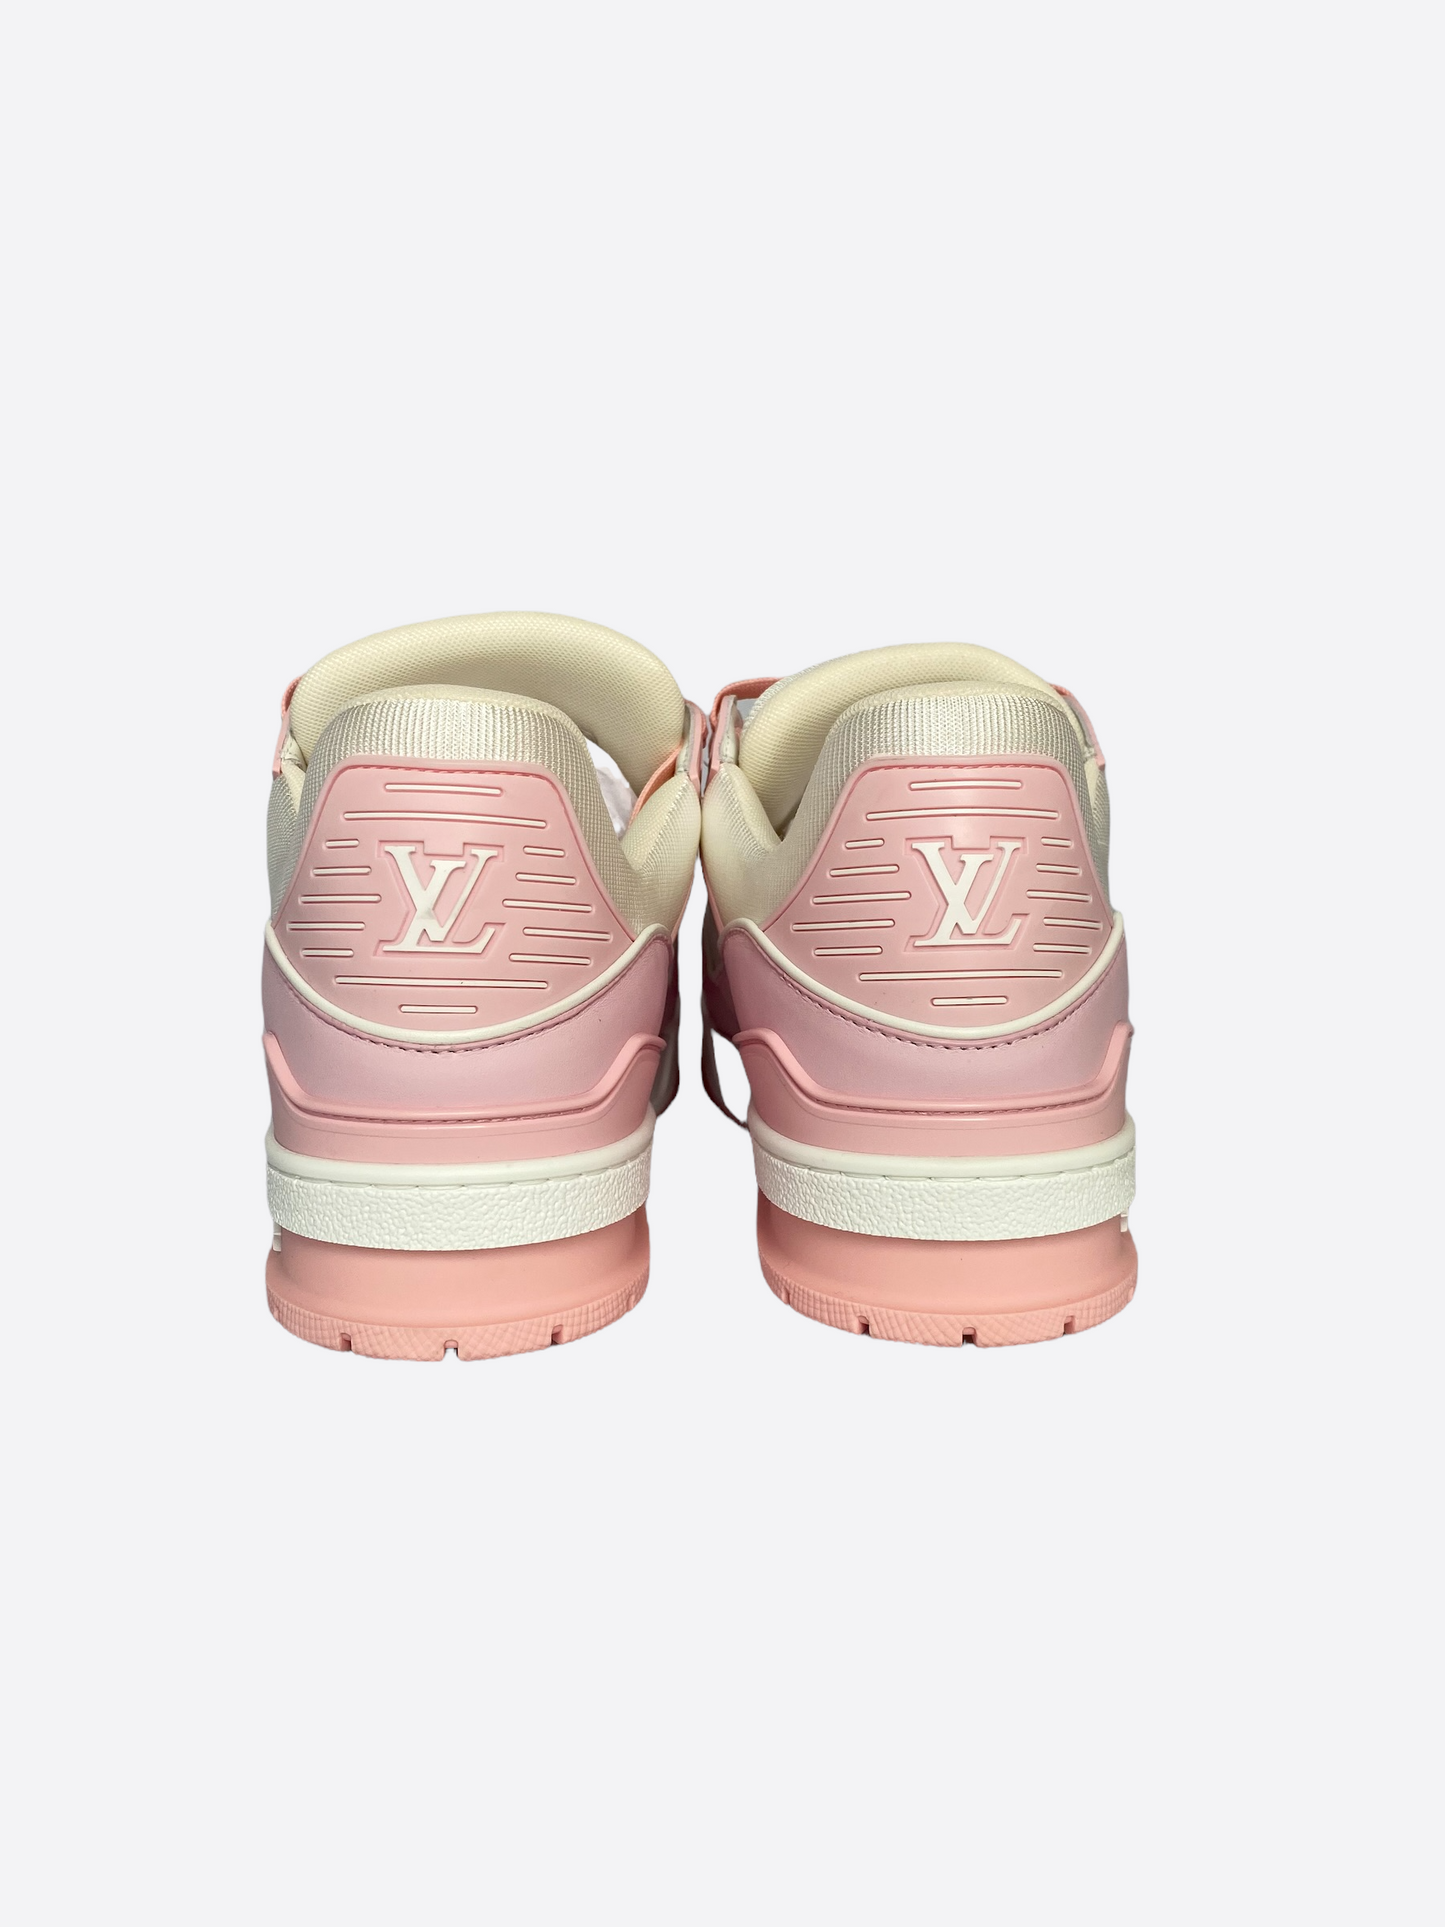 Louis Vuitton Pink White Monogram Mini Sprinteuse Sneakers Size 8